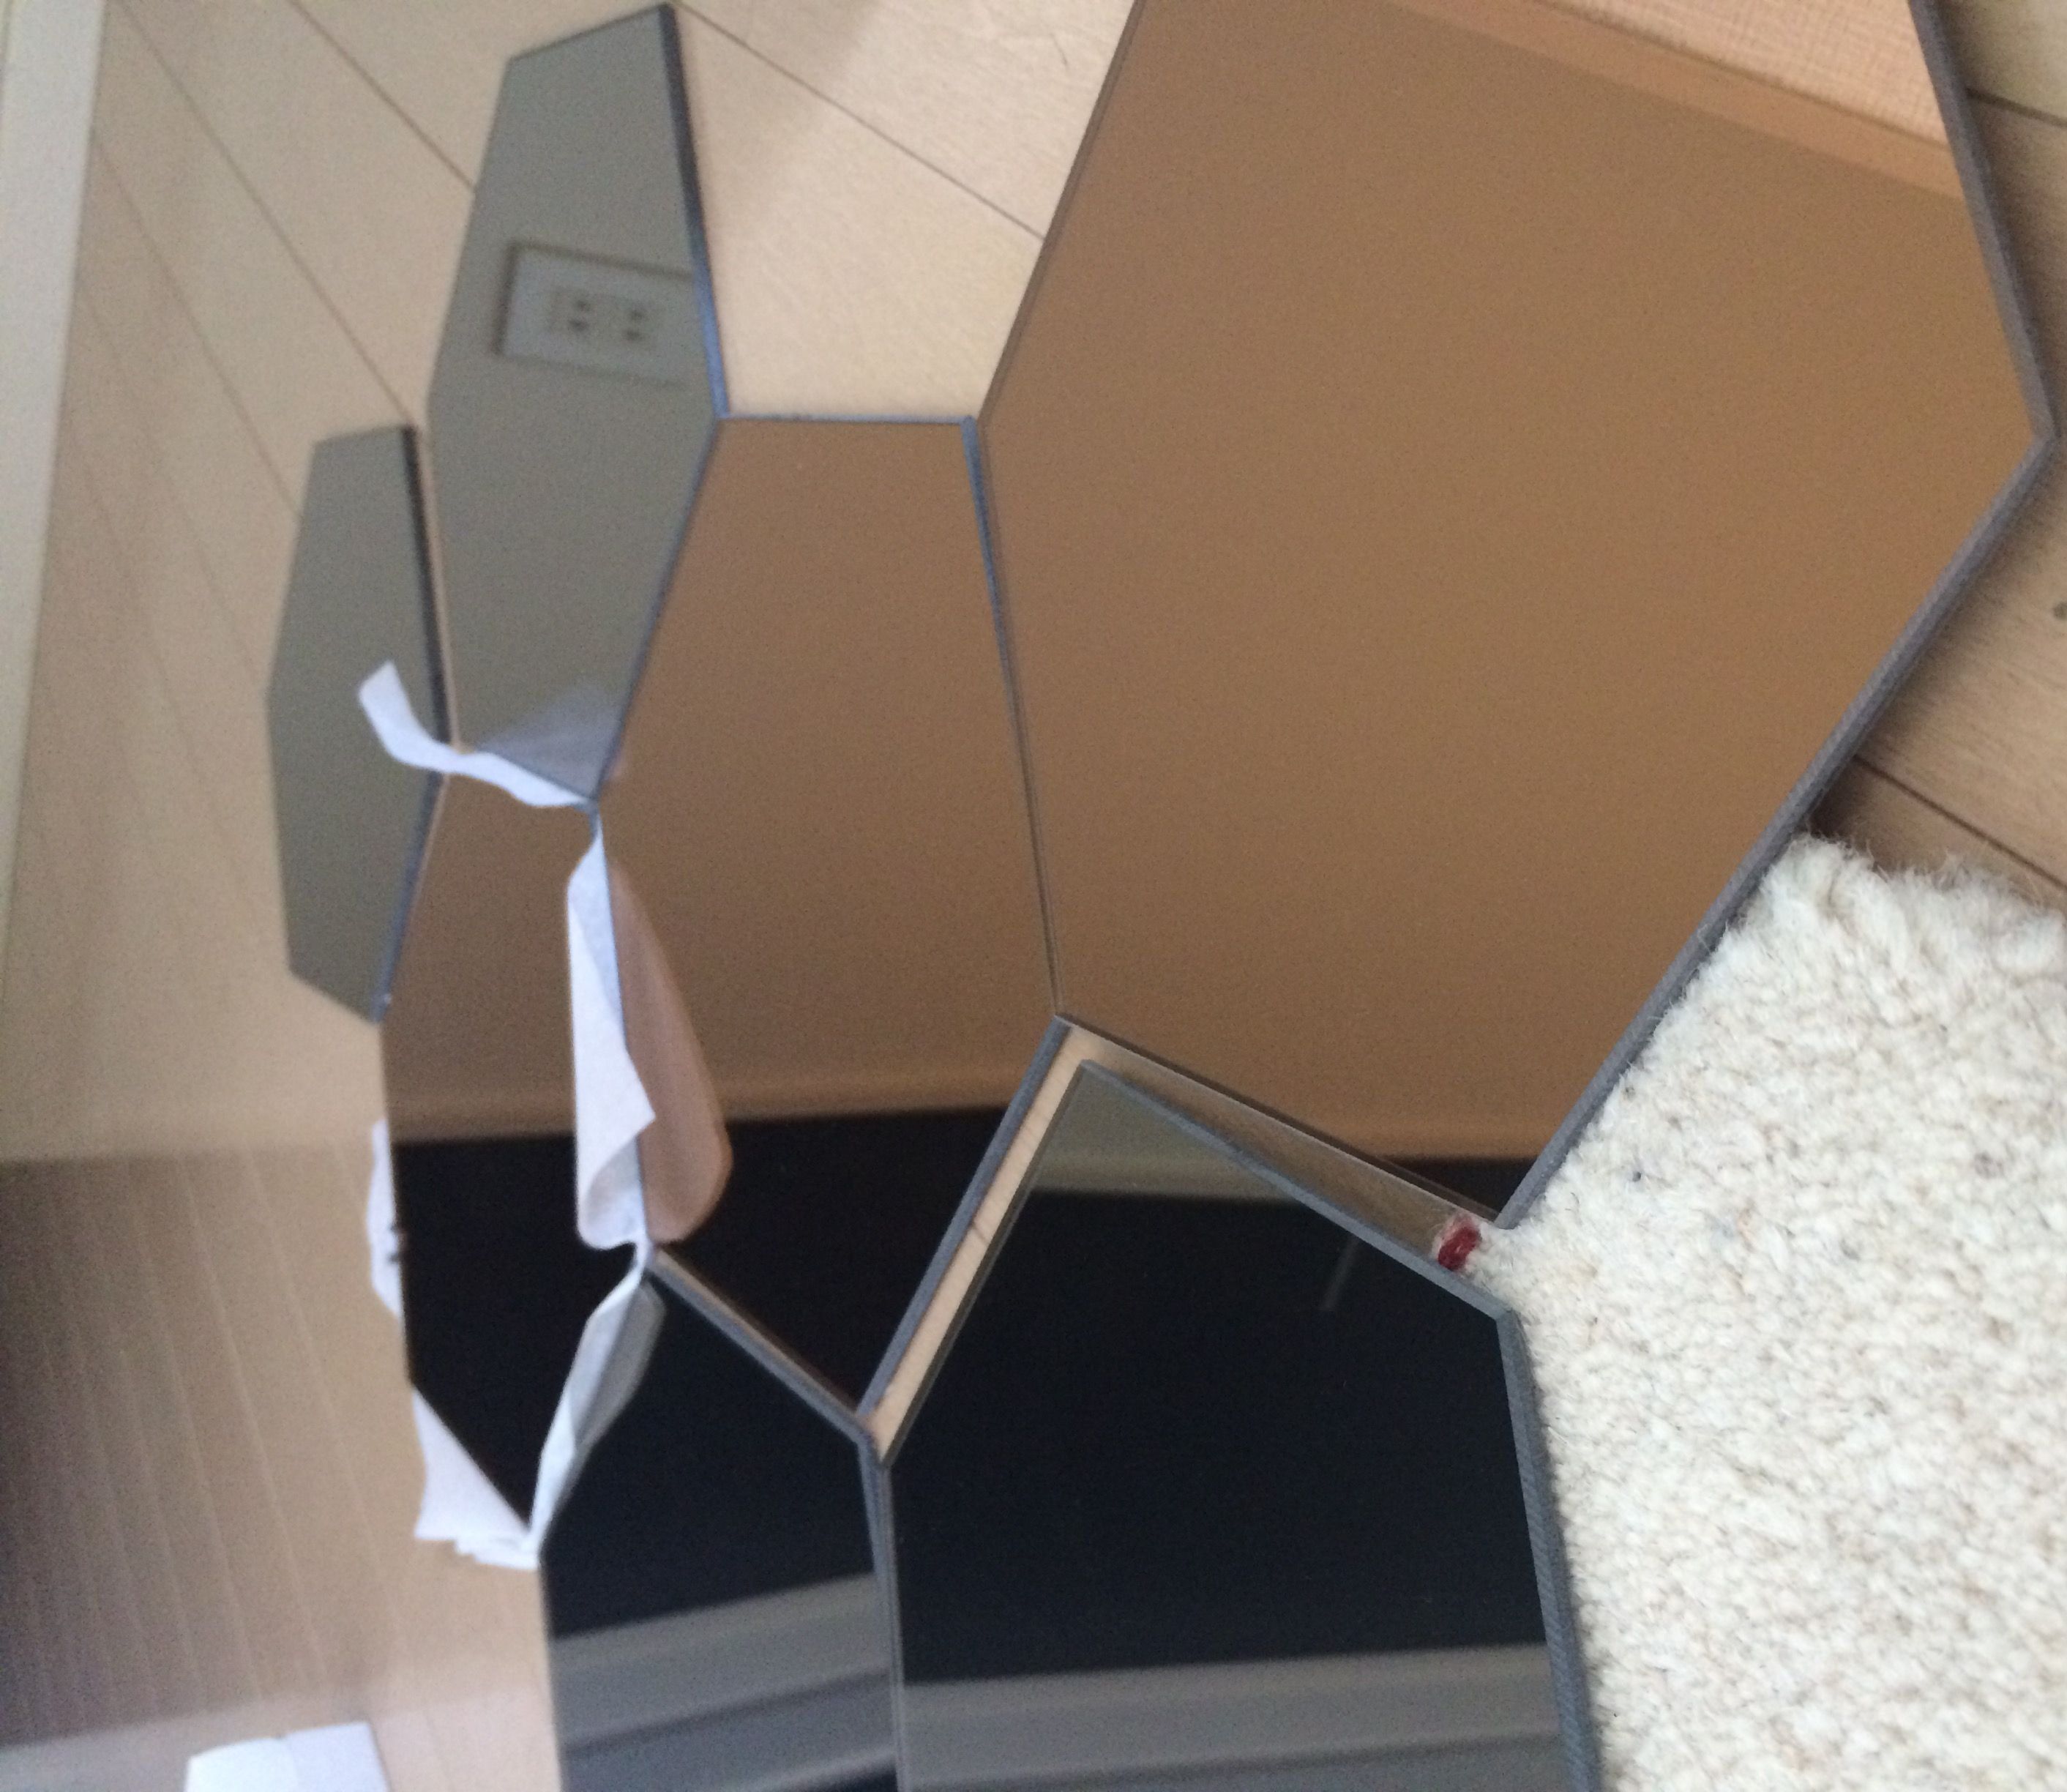 IKEAの六角形の鏡を貼りました。 | ロズの楽しい一日 - 楽天ブログ